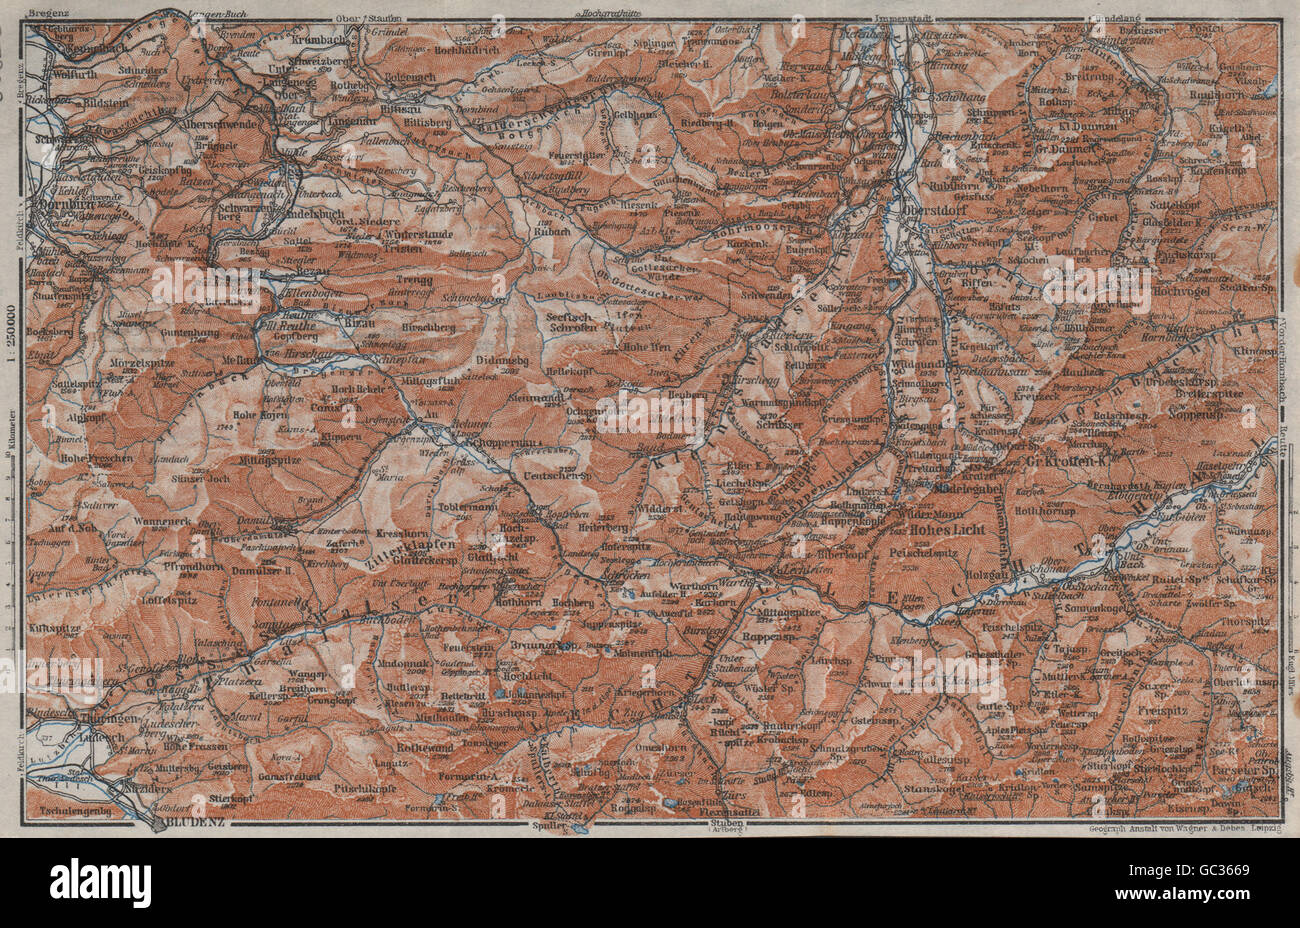 BREGENZERWALD & ALLGÄUER ALPEN. Blundez Oberstdorf Damüls Mittelberg, 1923 map Stock Photo